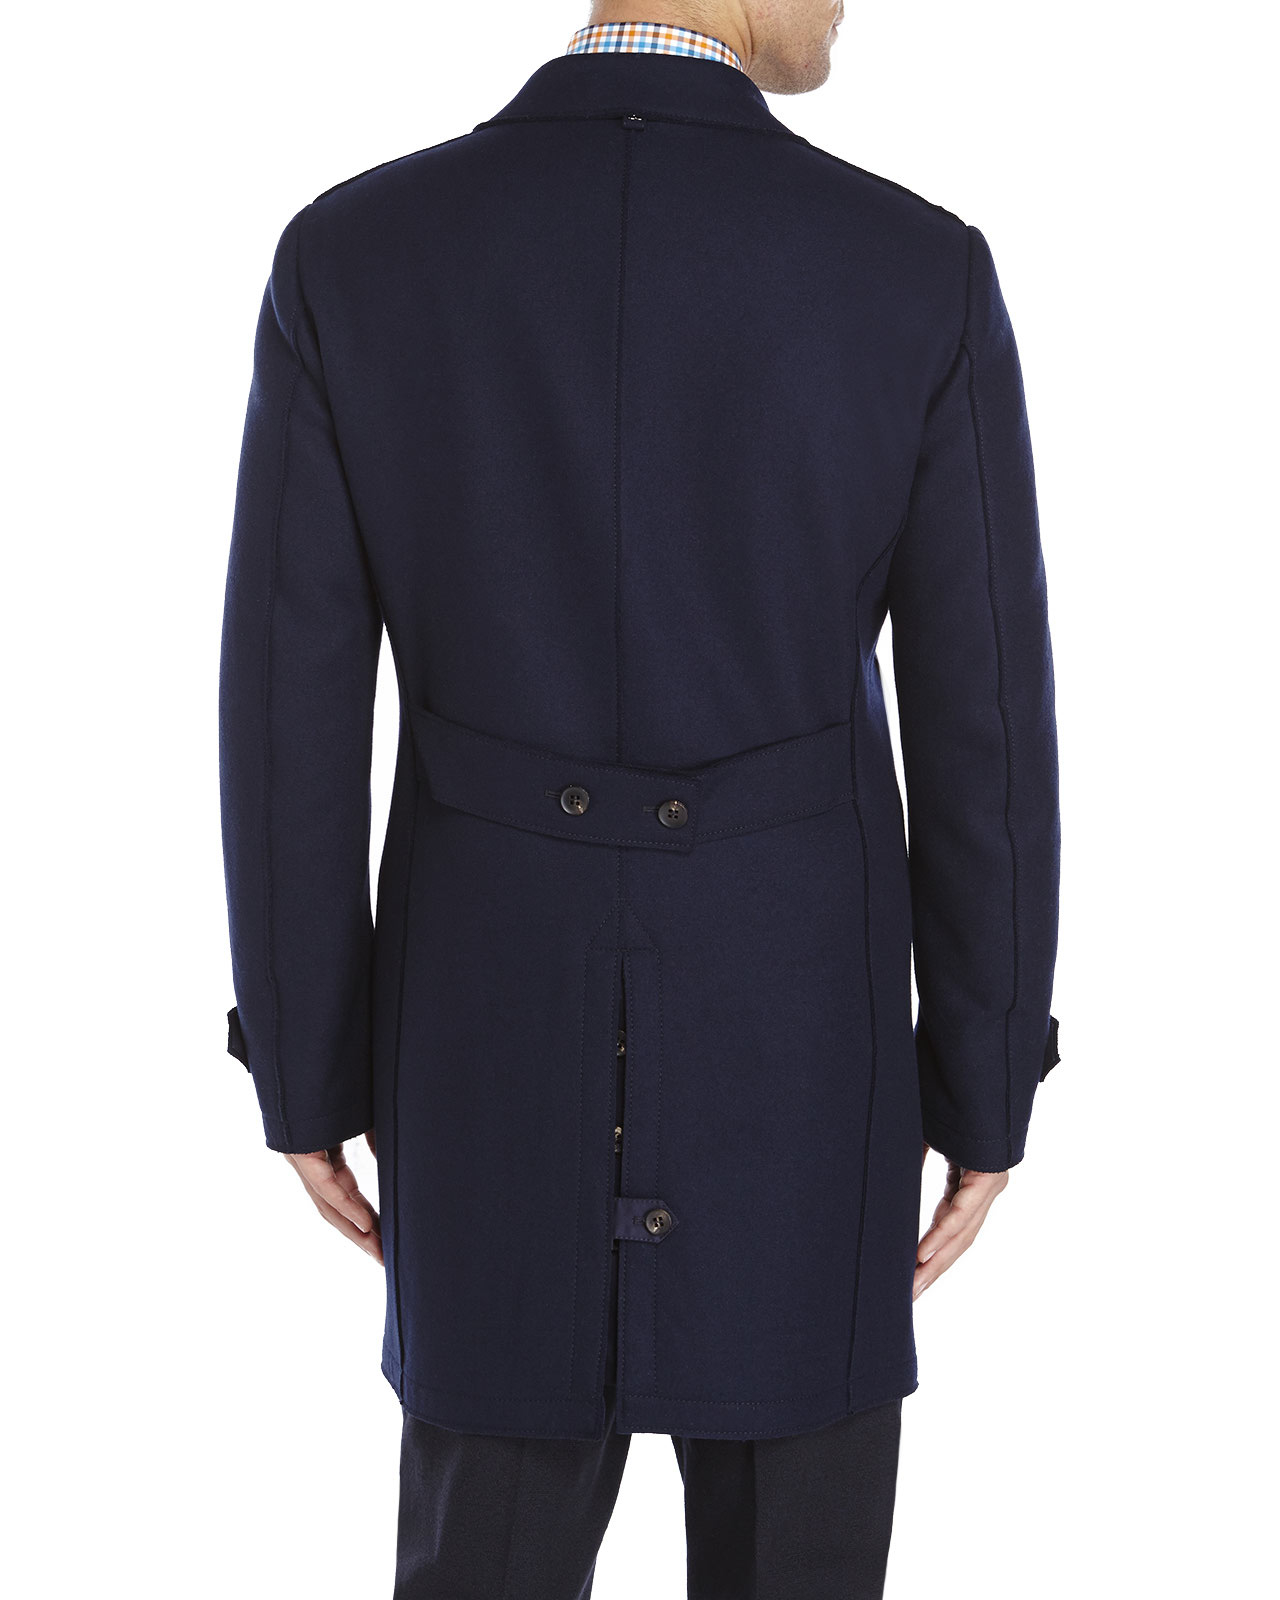 Lyst - Allegri Navy Overcoat in Blue for Men